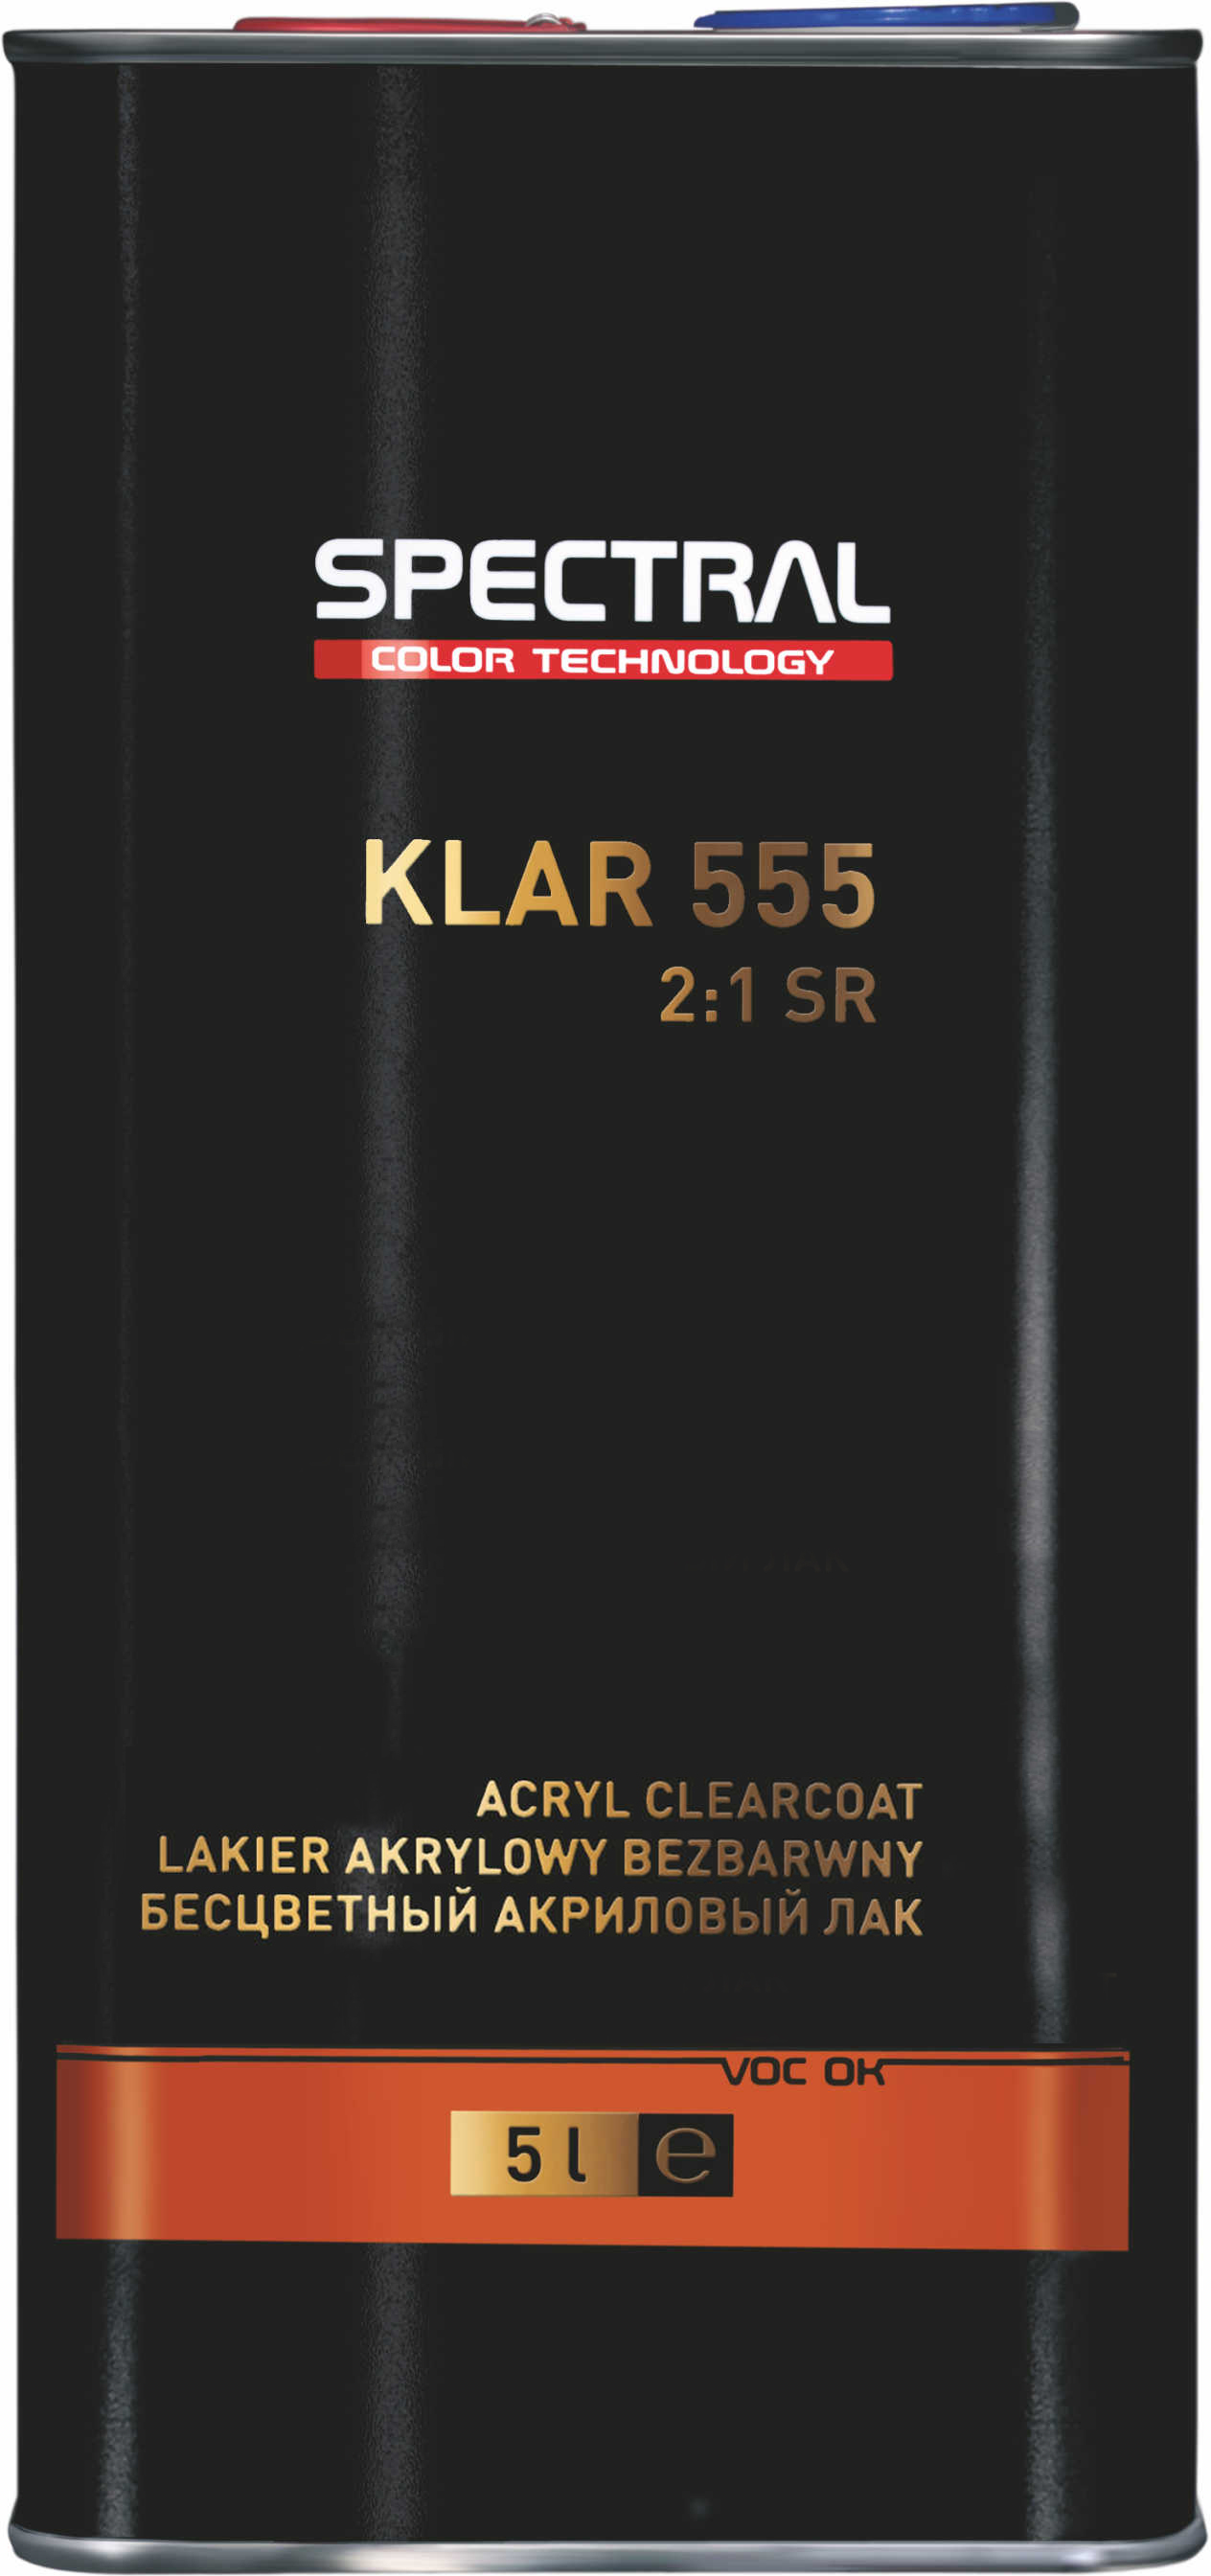 KLAR 555 - Dwuskładnikowy bezbarwny lakier akrylowy o zwiększonej odporności na zarysowanie Scratch Resistant